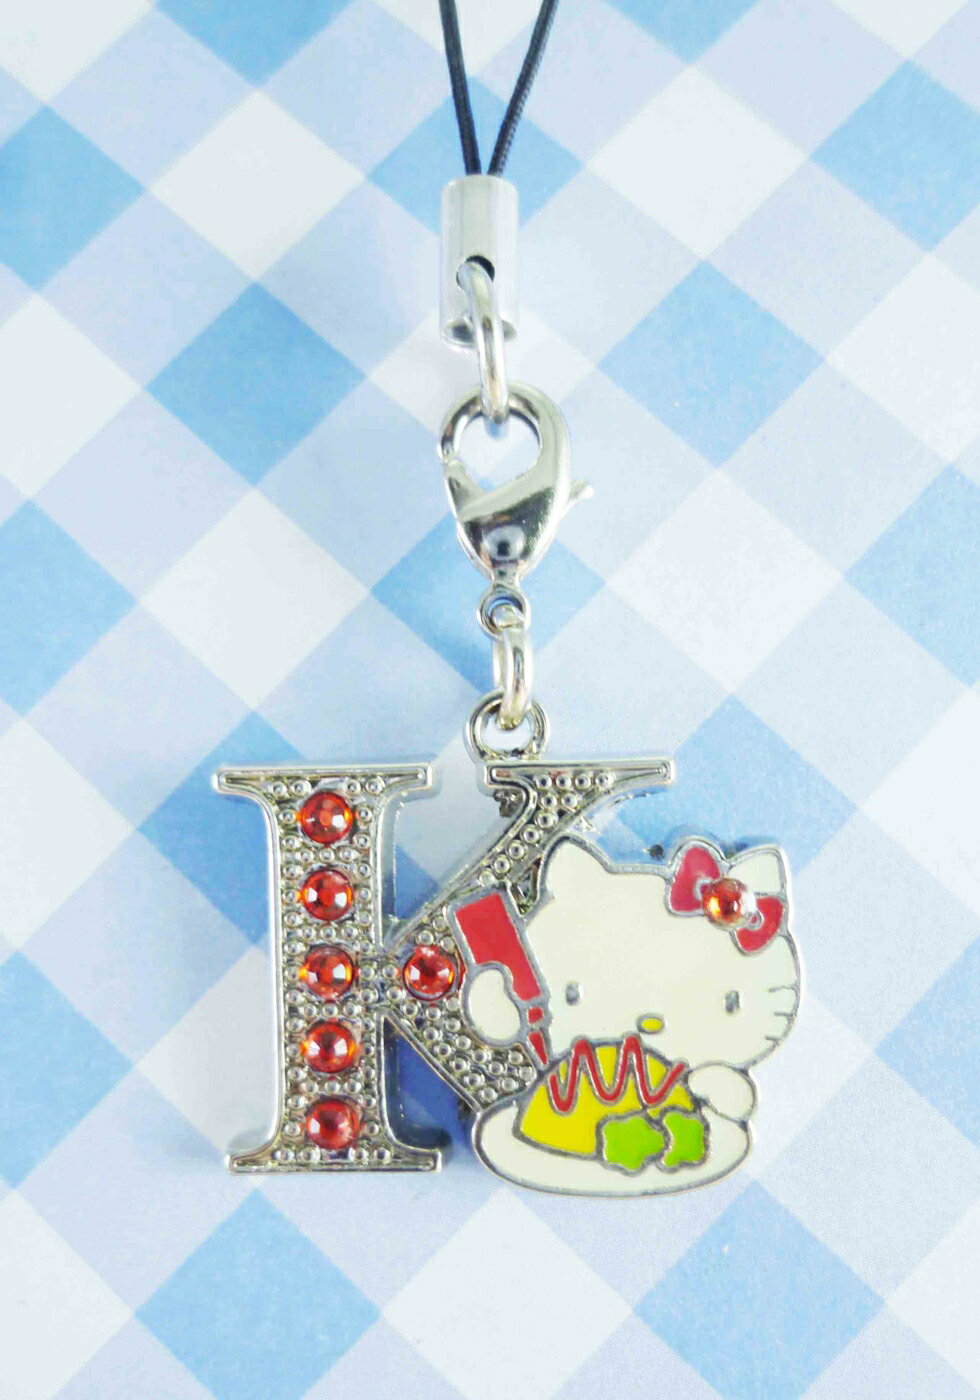 【震撼精品百貨】Hello Kitty 凱蒂貓 KITTY手機吊飾-KITTY英文字母造型-K 震撼日式精品百貨